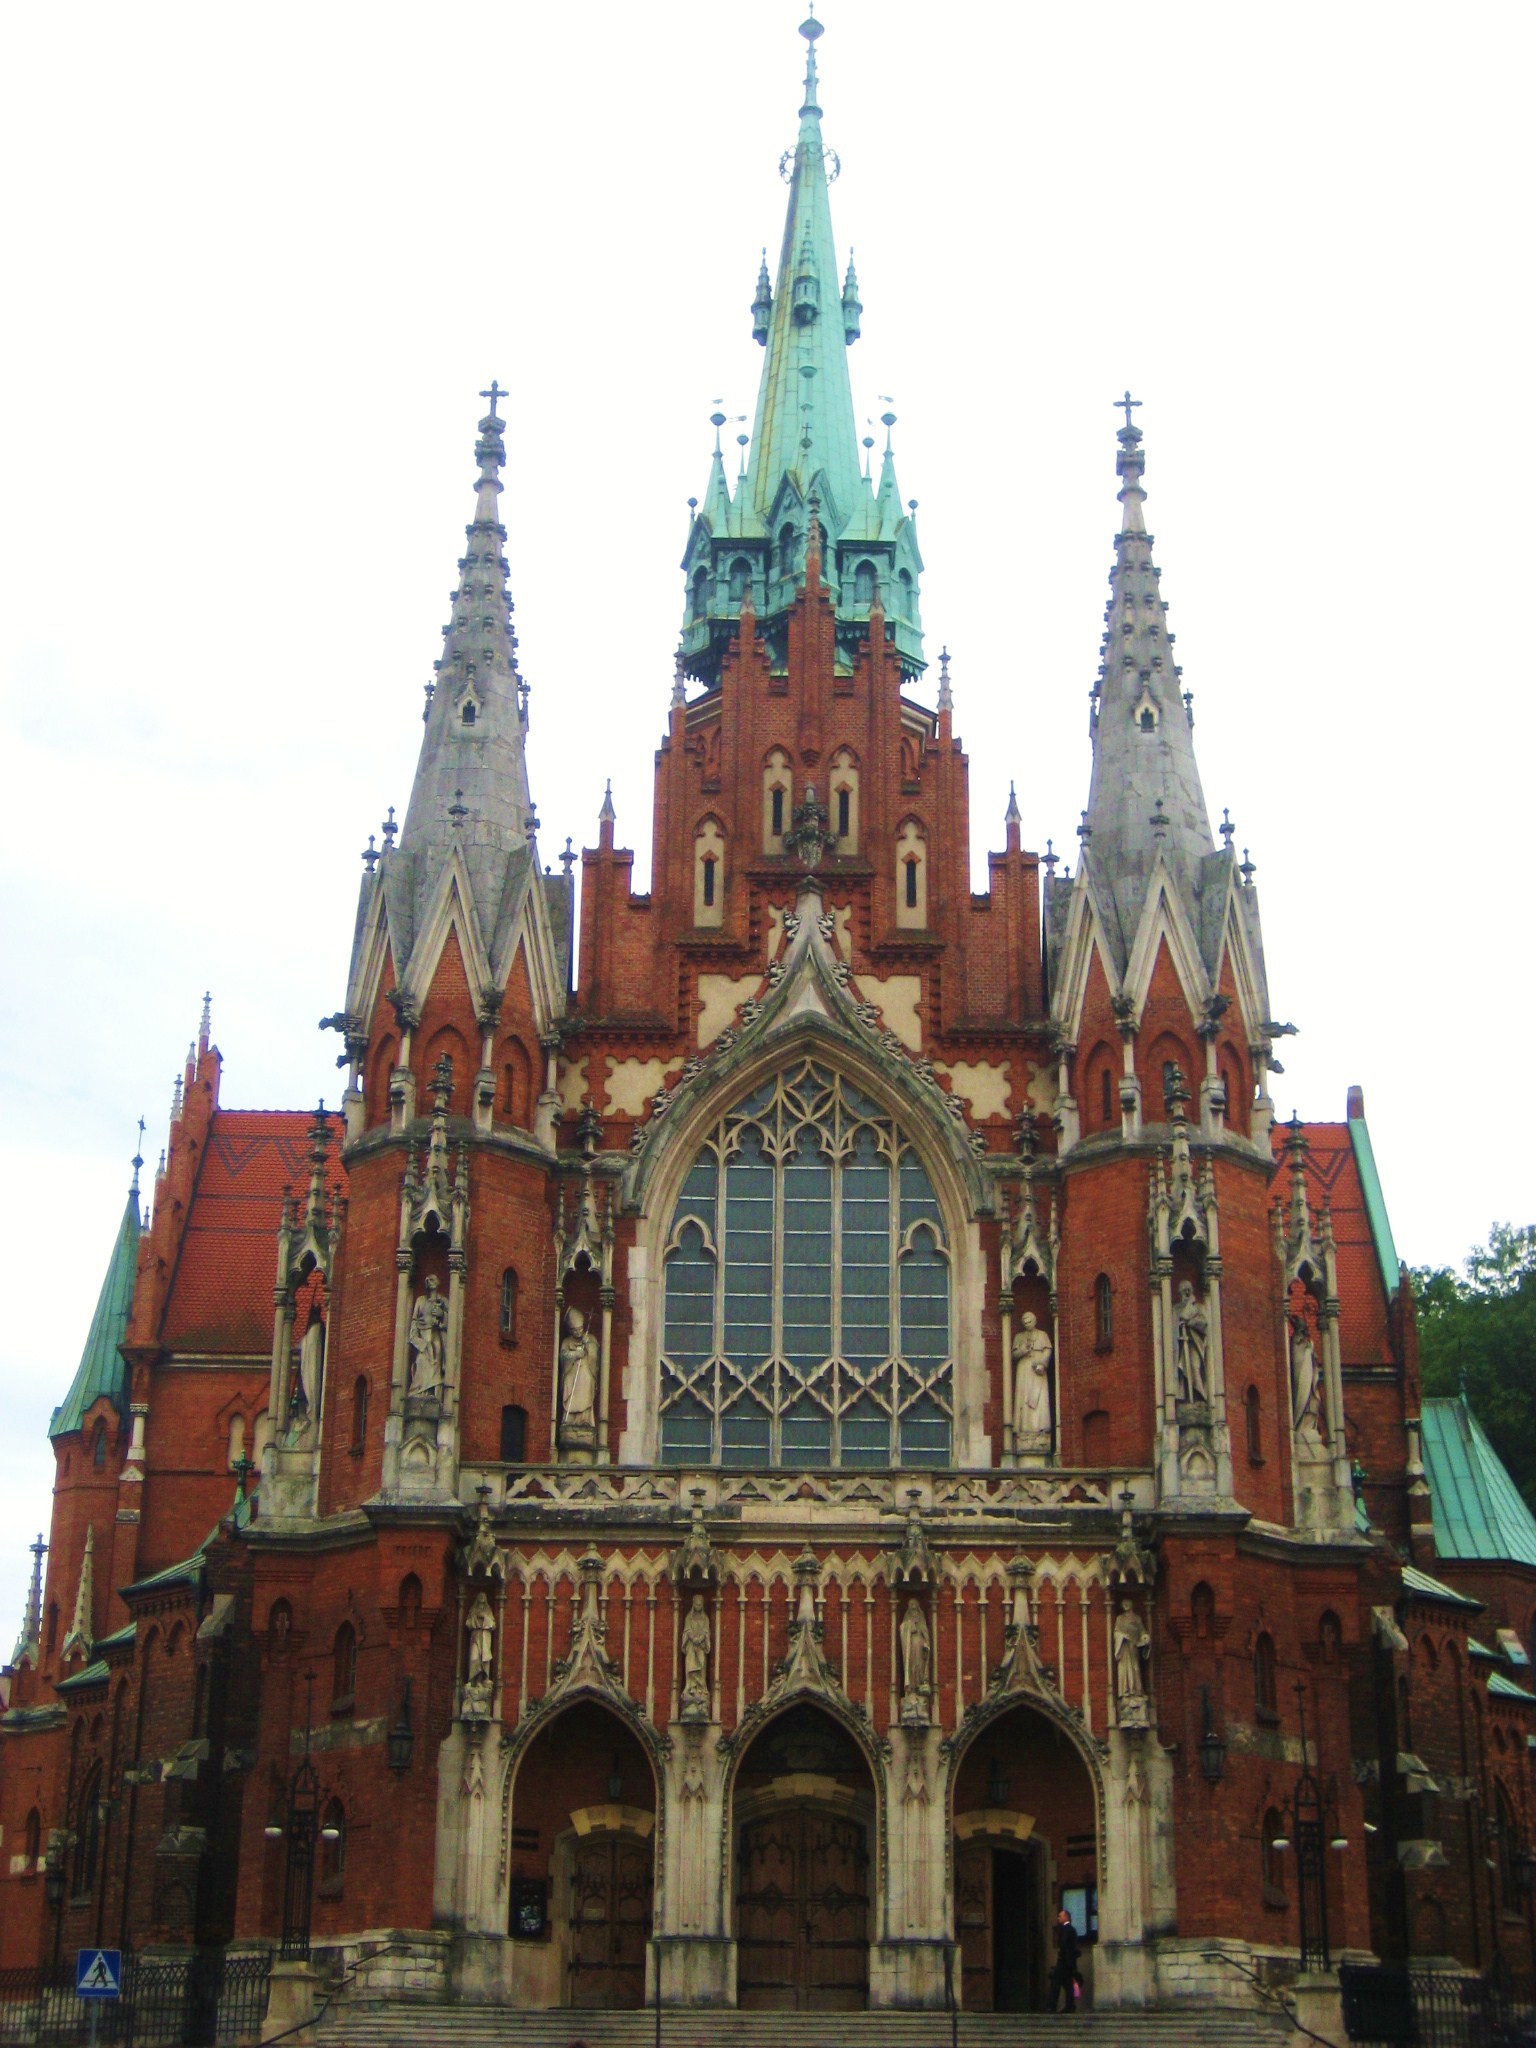 ST Joseph's Church in Krakow